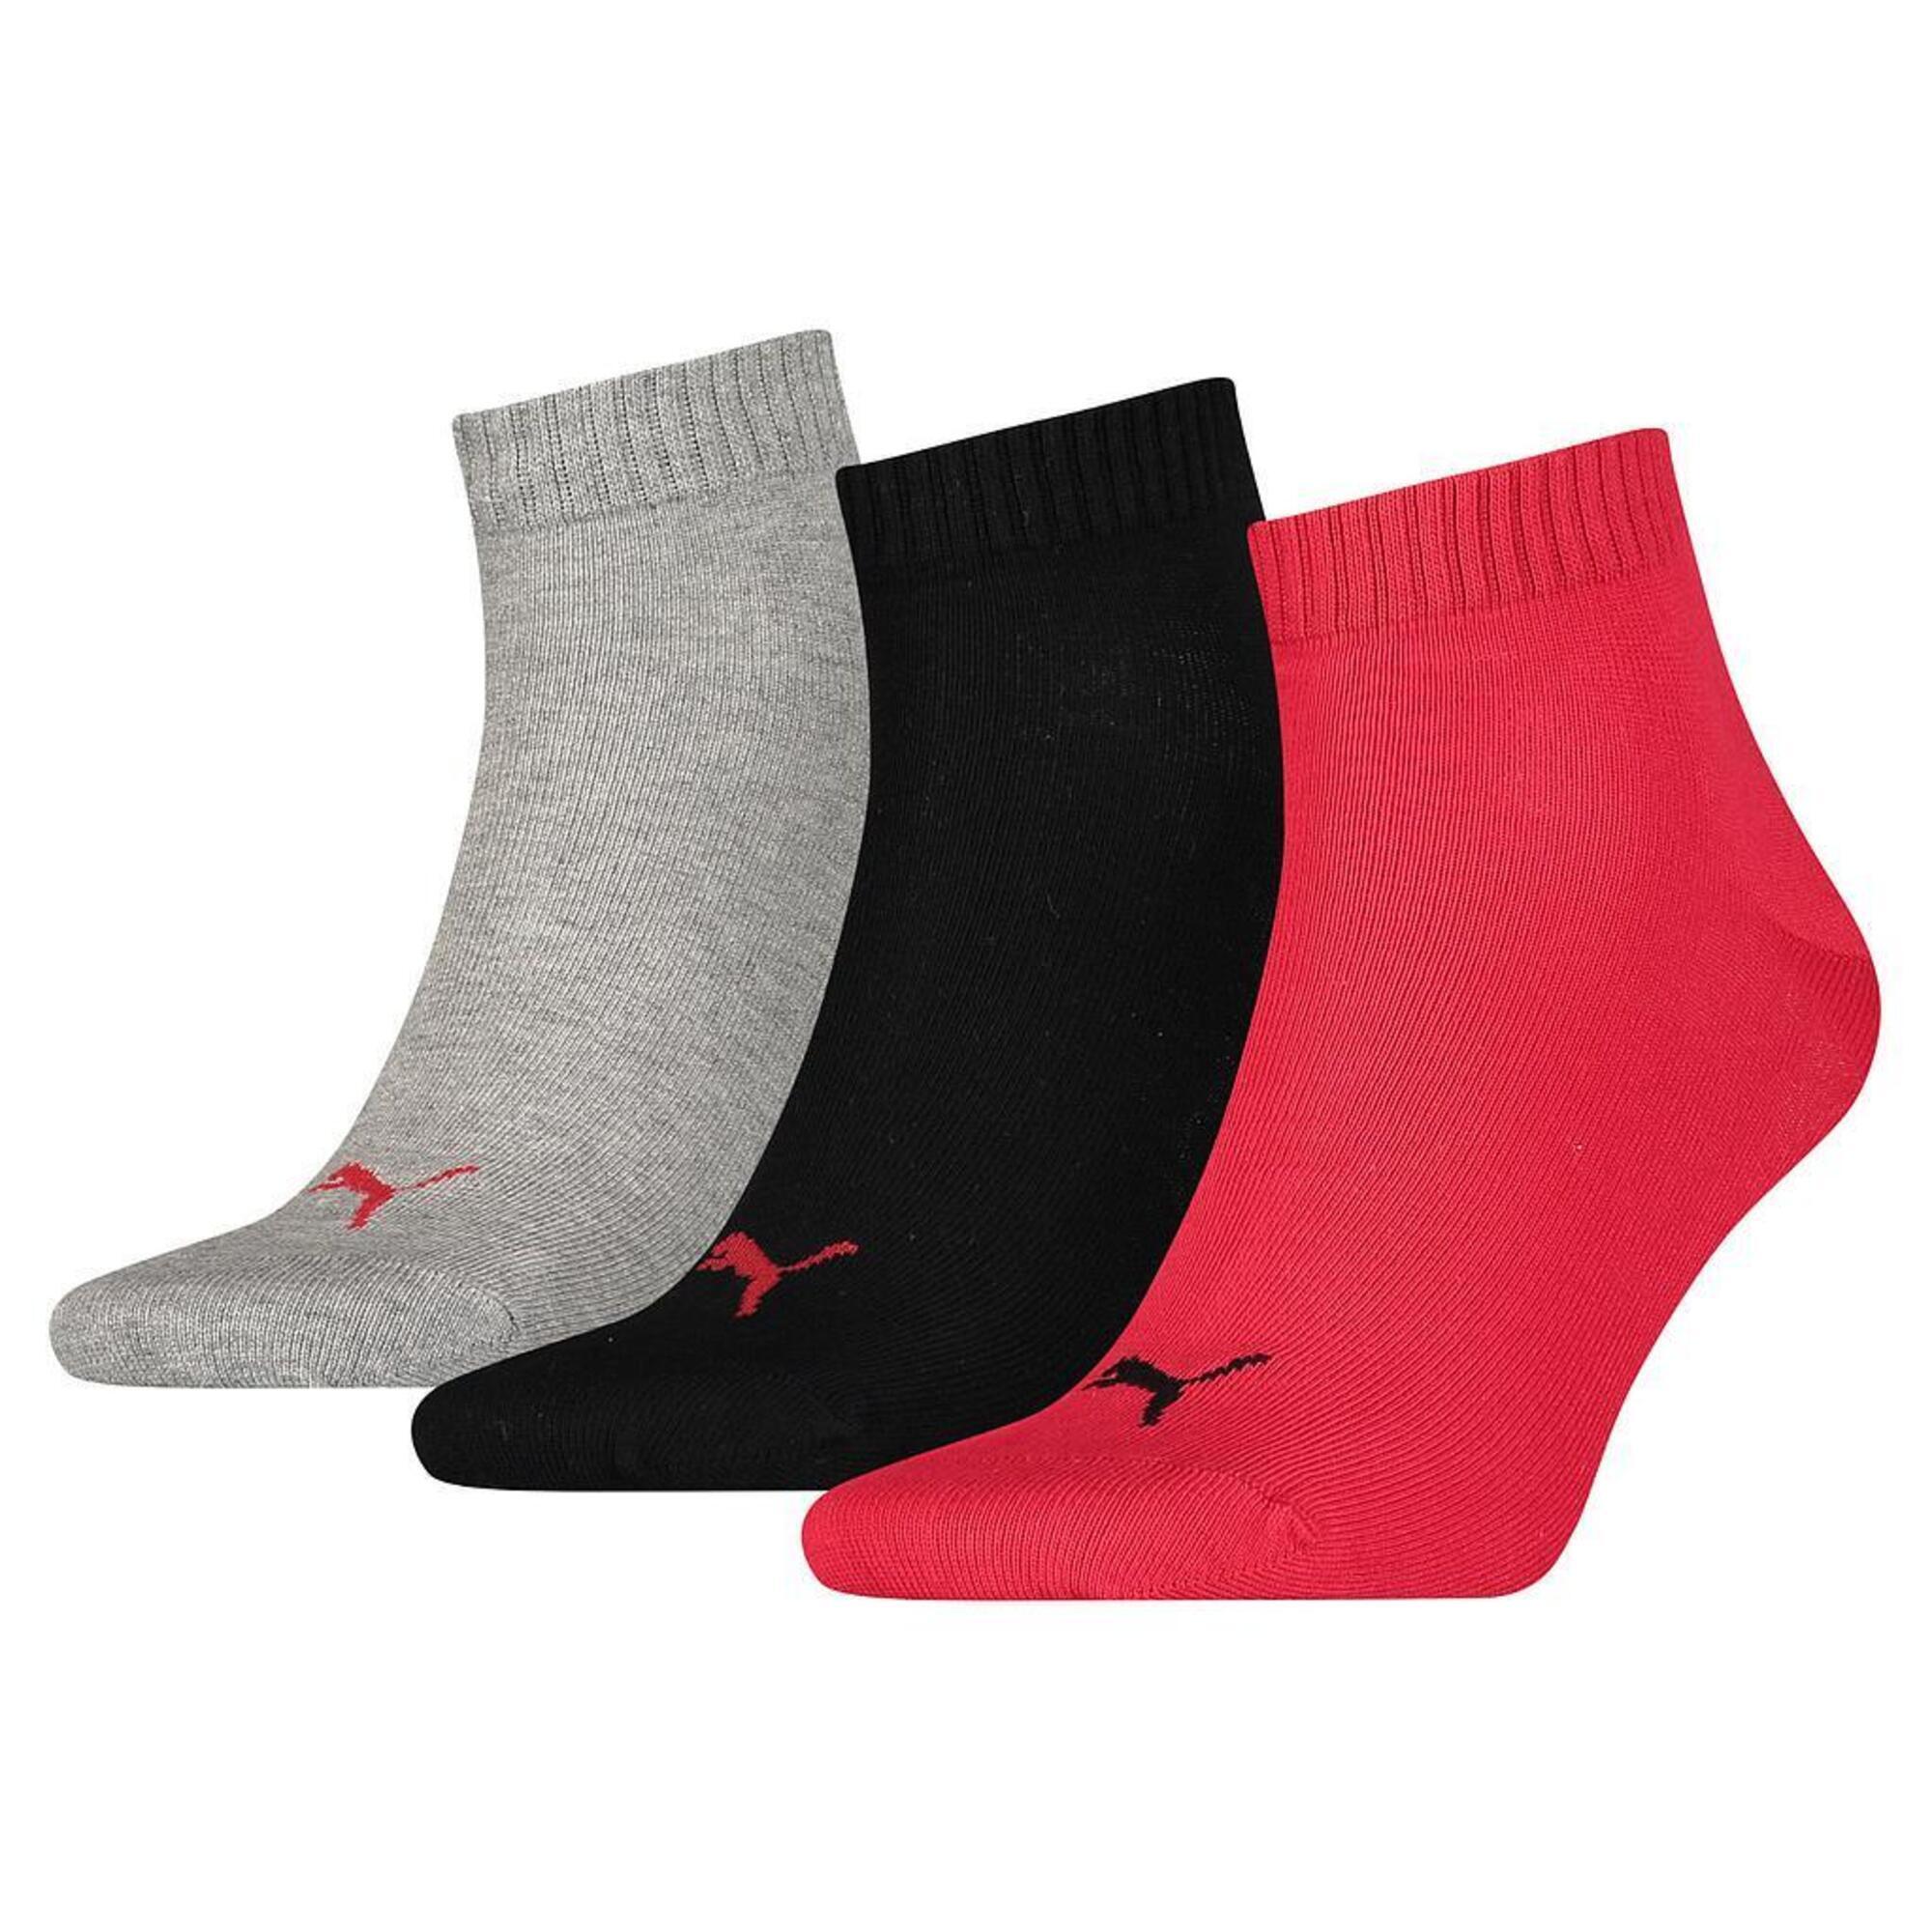 Unisex Adult Quarter Training Ankle Socks (Pack of 3) (Black) 3/3